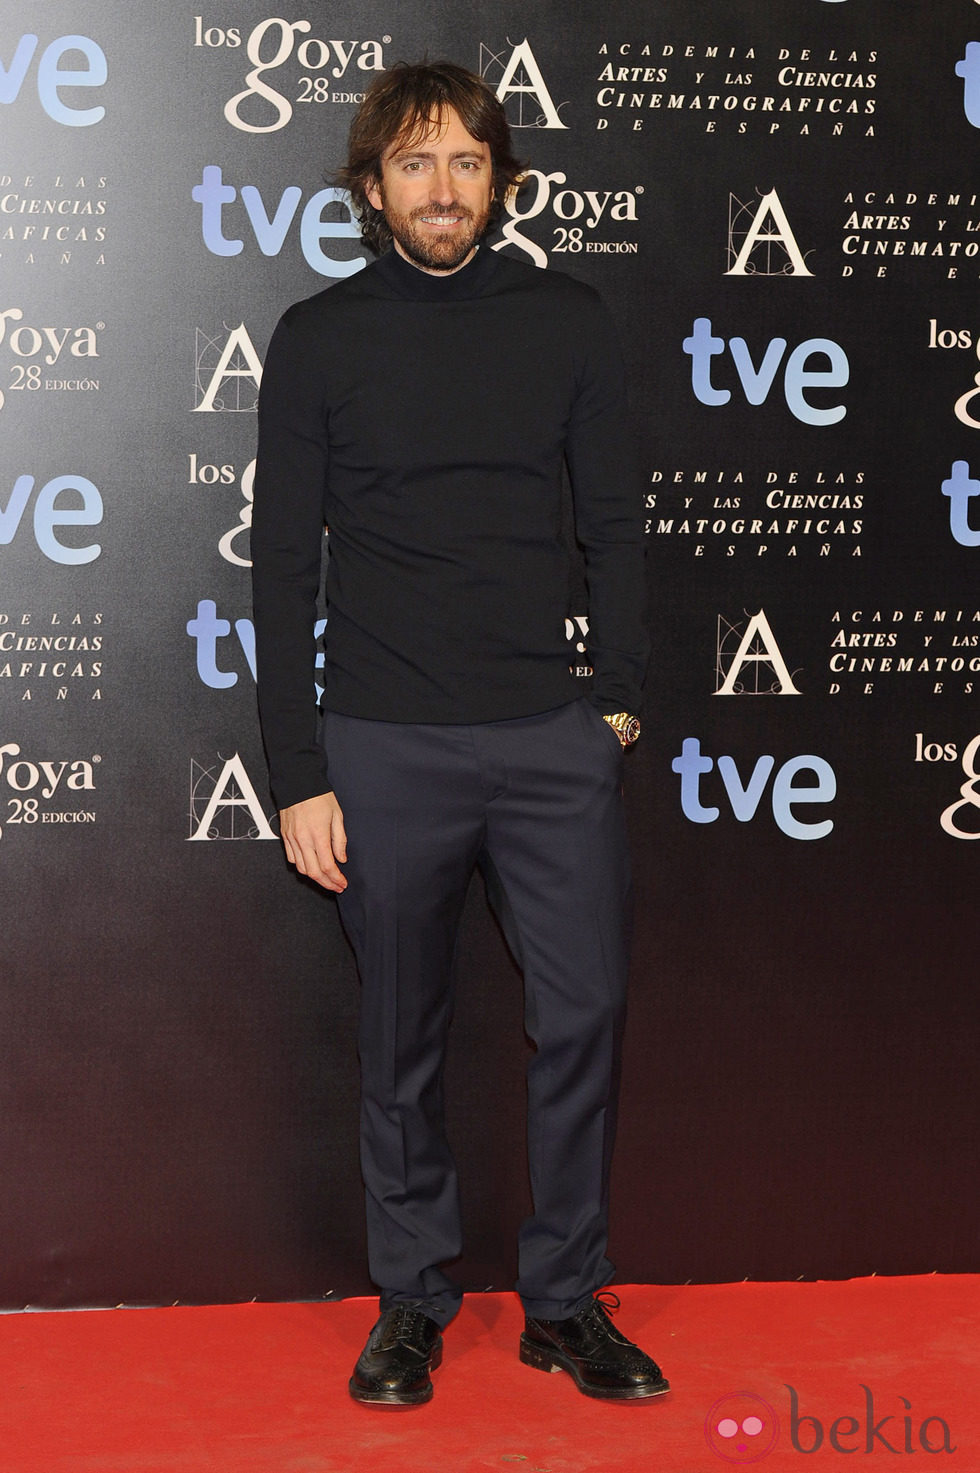 Daniel Sánchez Arévalo en la fiesta de nominados a los premios Goya 2014